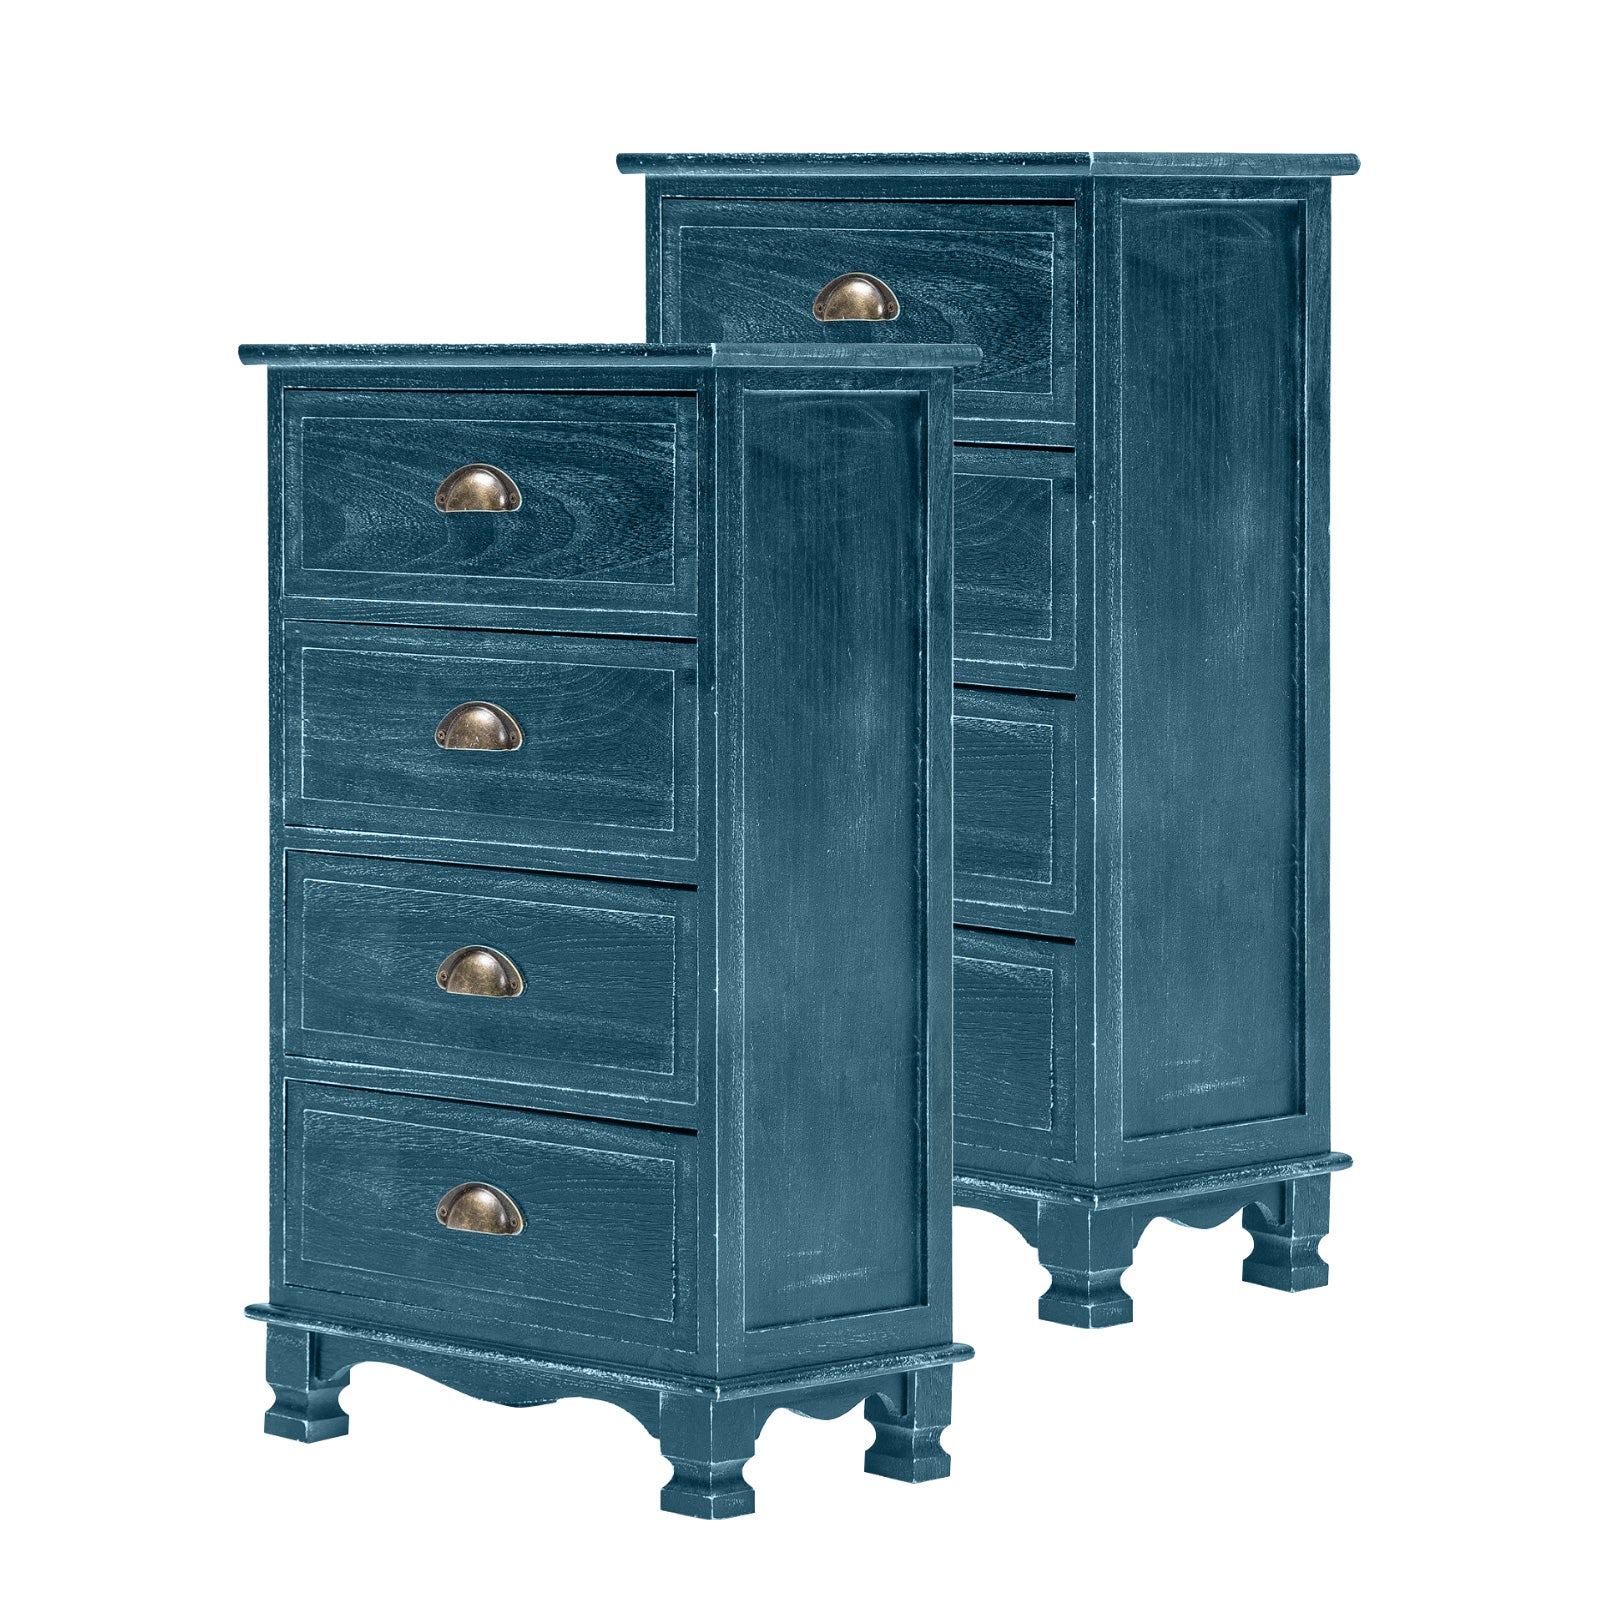 2x Vintage Storage Cabinet Bedside Table 4 Drawer ADELINE BLUE